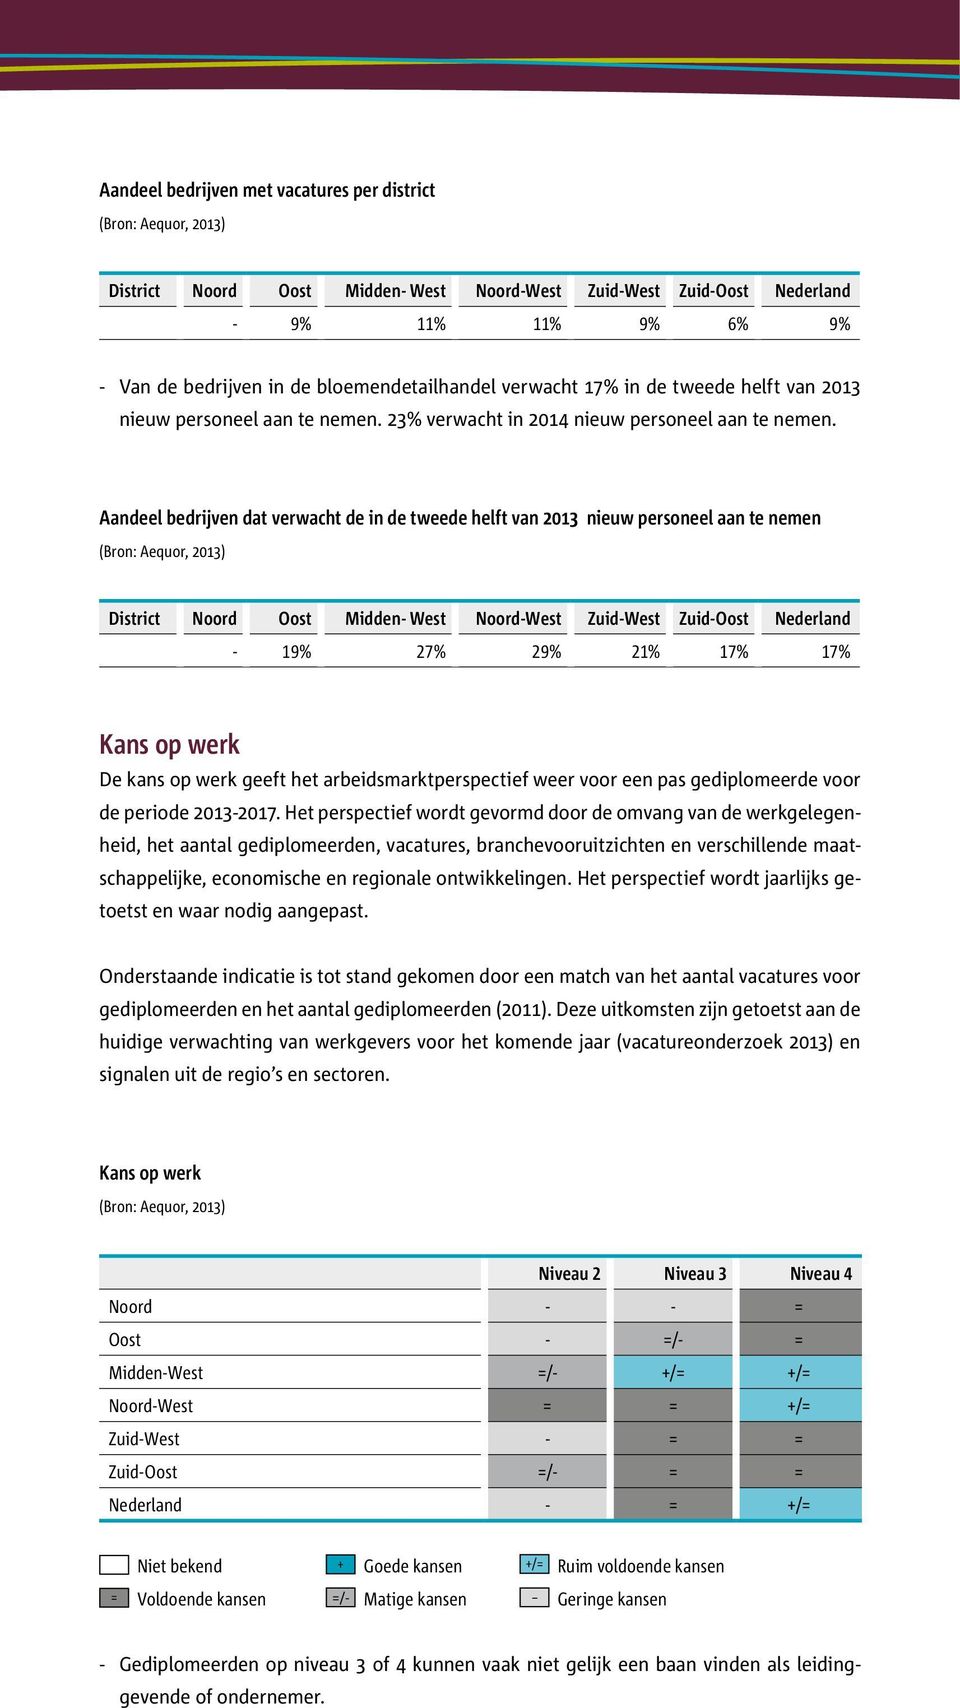 Aandeel bedrijven dat verwacht de in de tweede helft van 2013 nieuw personeel aan te nemen District Noord Oost Midden- West Noord-West Zuid-West Zuid-Oost Nederland - 19% 27% 29% 21% 17% 17% Kans op